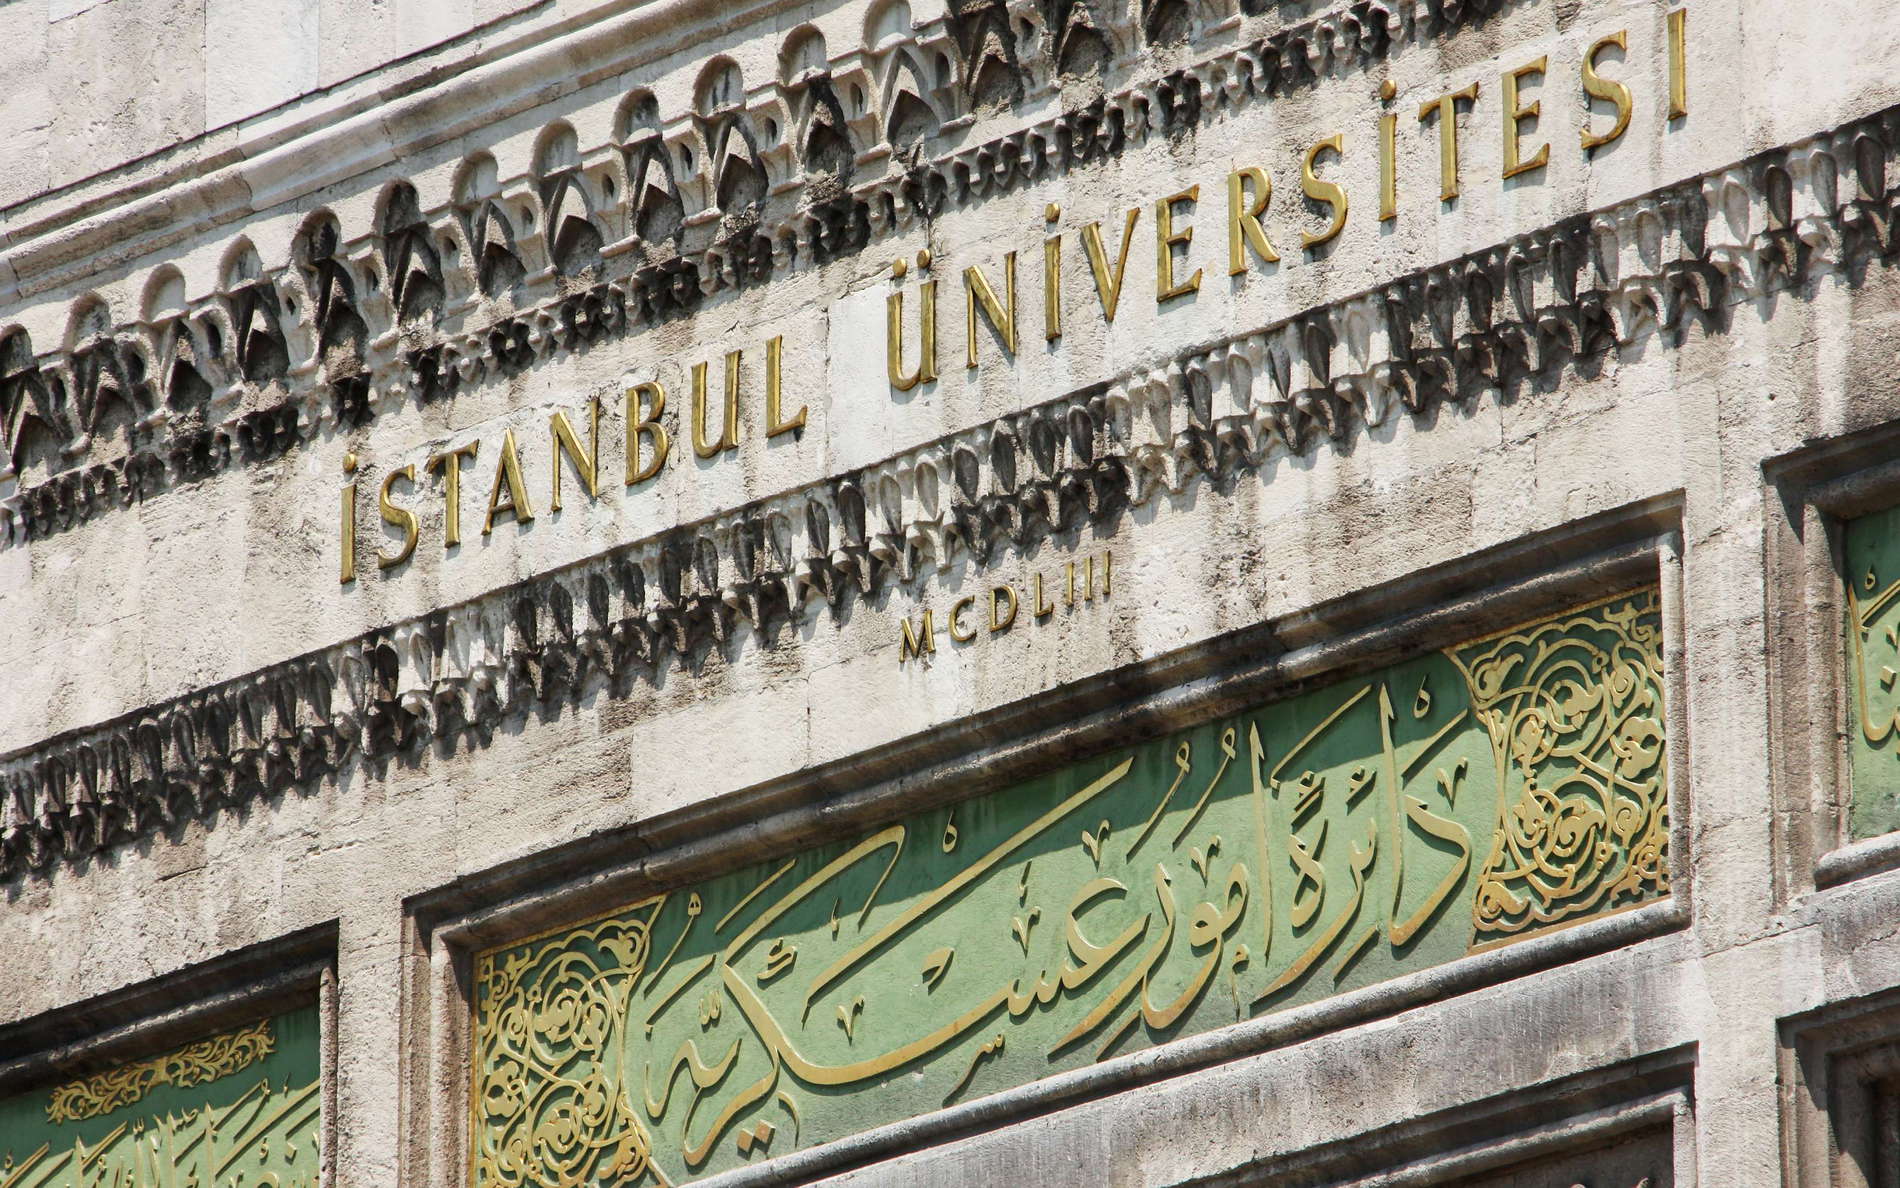 İstanbul Üniversitesi  |  Entrance gate